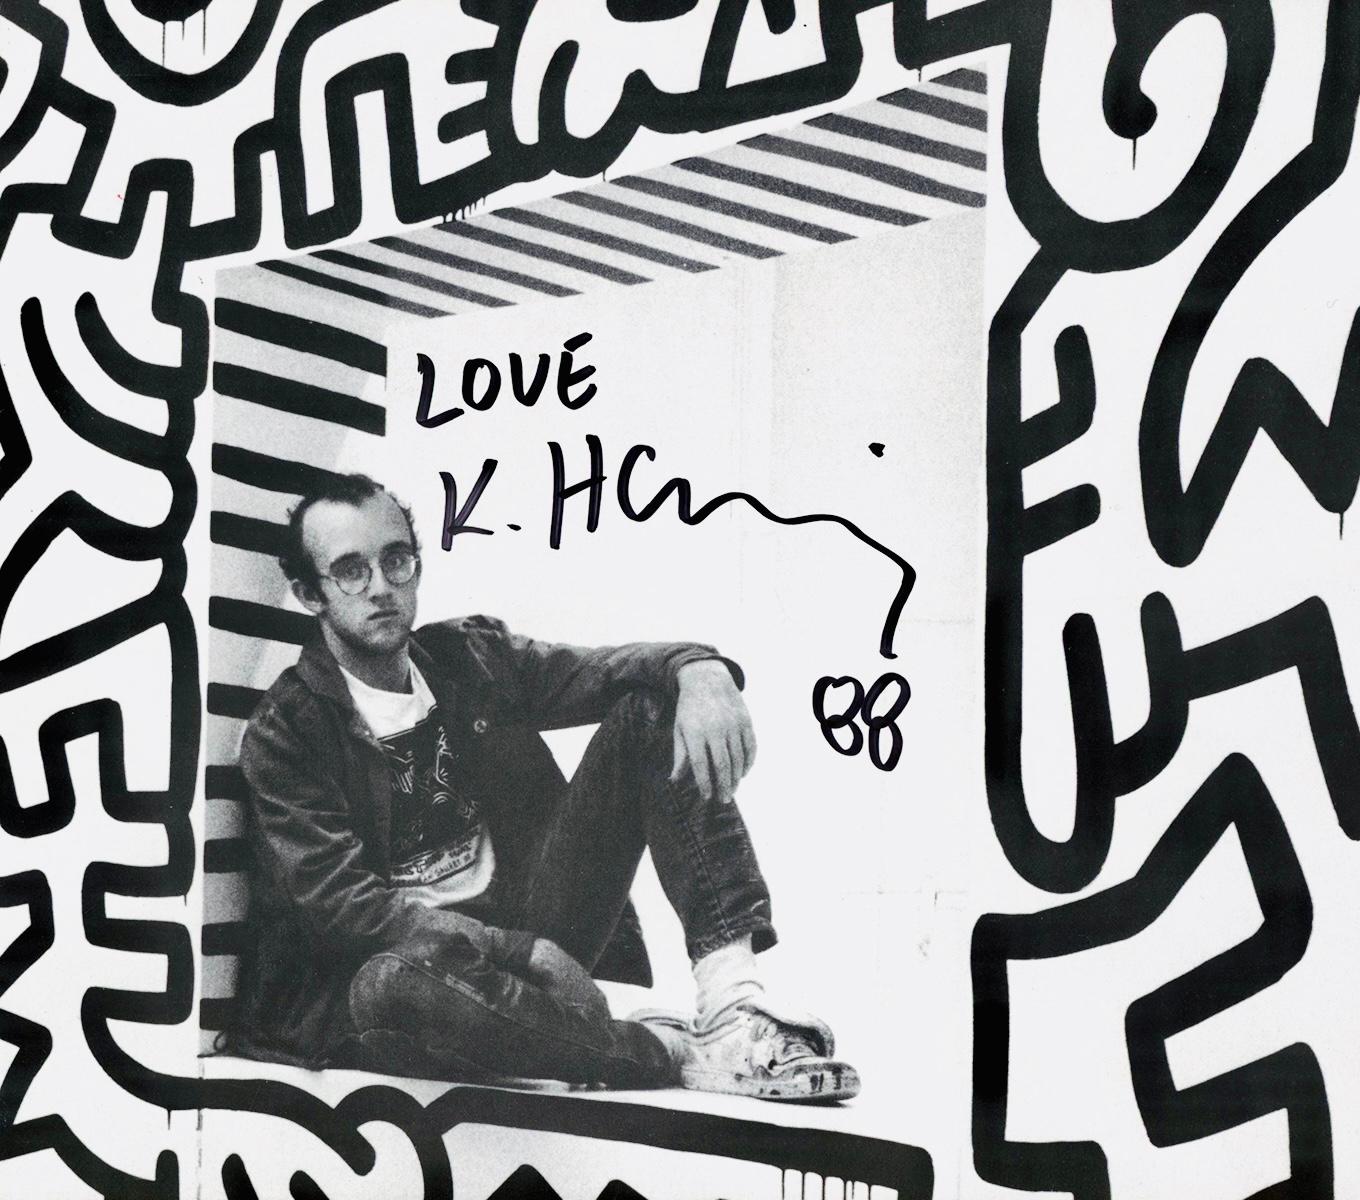 Signiertes Keith Haring Pop Shop Poster 1988:
Ein historisches 1980er Keith Haring Pop Shop Plakat / ausklappbaren Katalog (Rückseite), liebevoll beschriftet, "Love K. Haring 88" in schwarzem Marker mit der Signatur des Künstlers gekreuzten